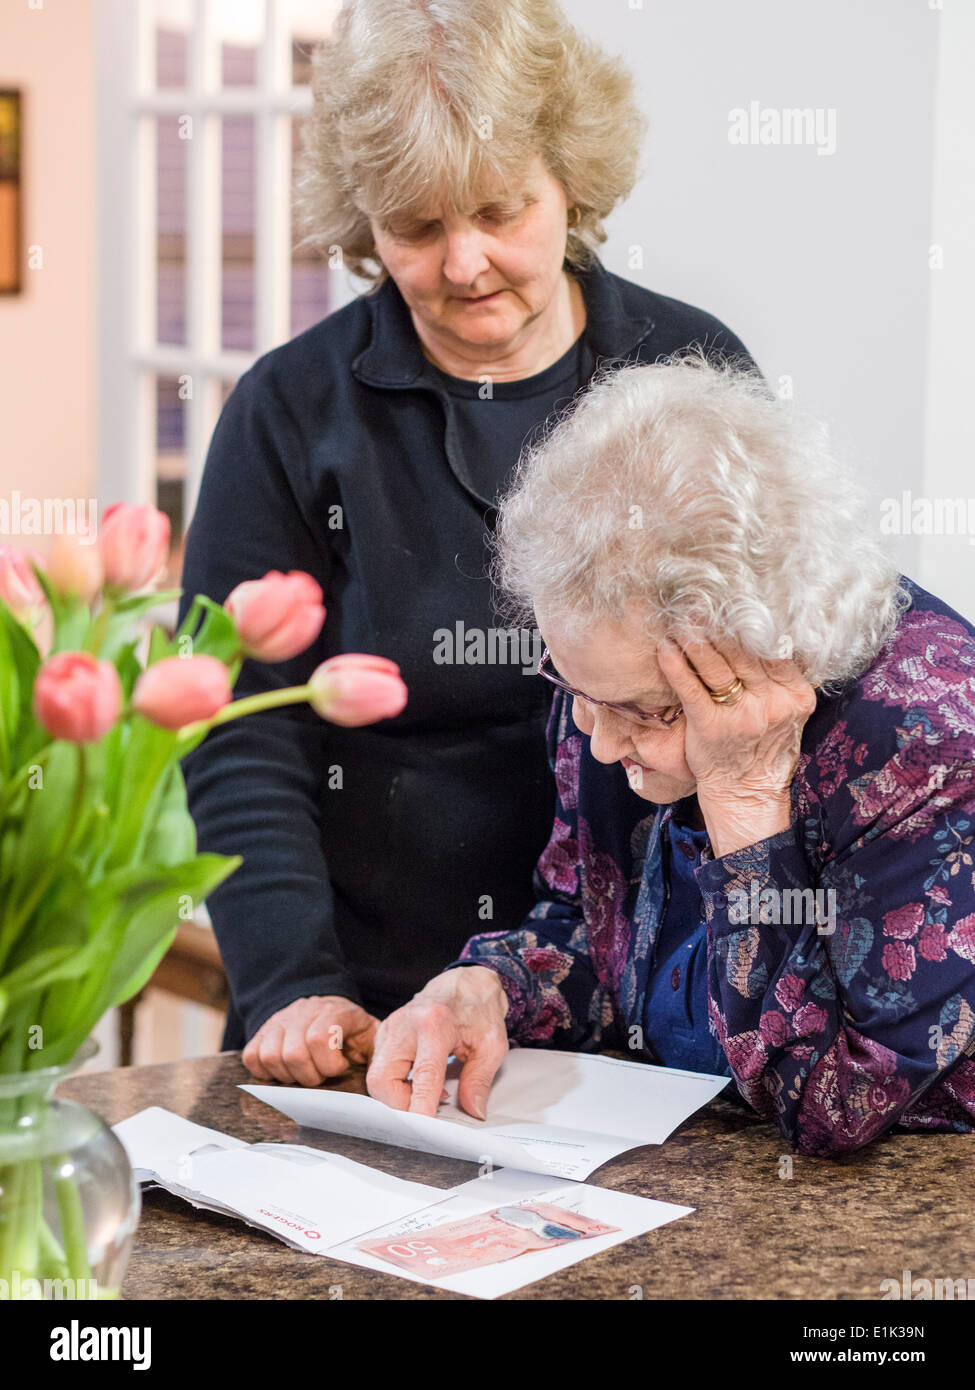 Leer los detalles de una carta. Una mujer mayor lee una carta, una mano siguiendo el texto mientras que la otra admite su cabeza Foto de stock